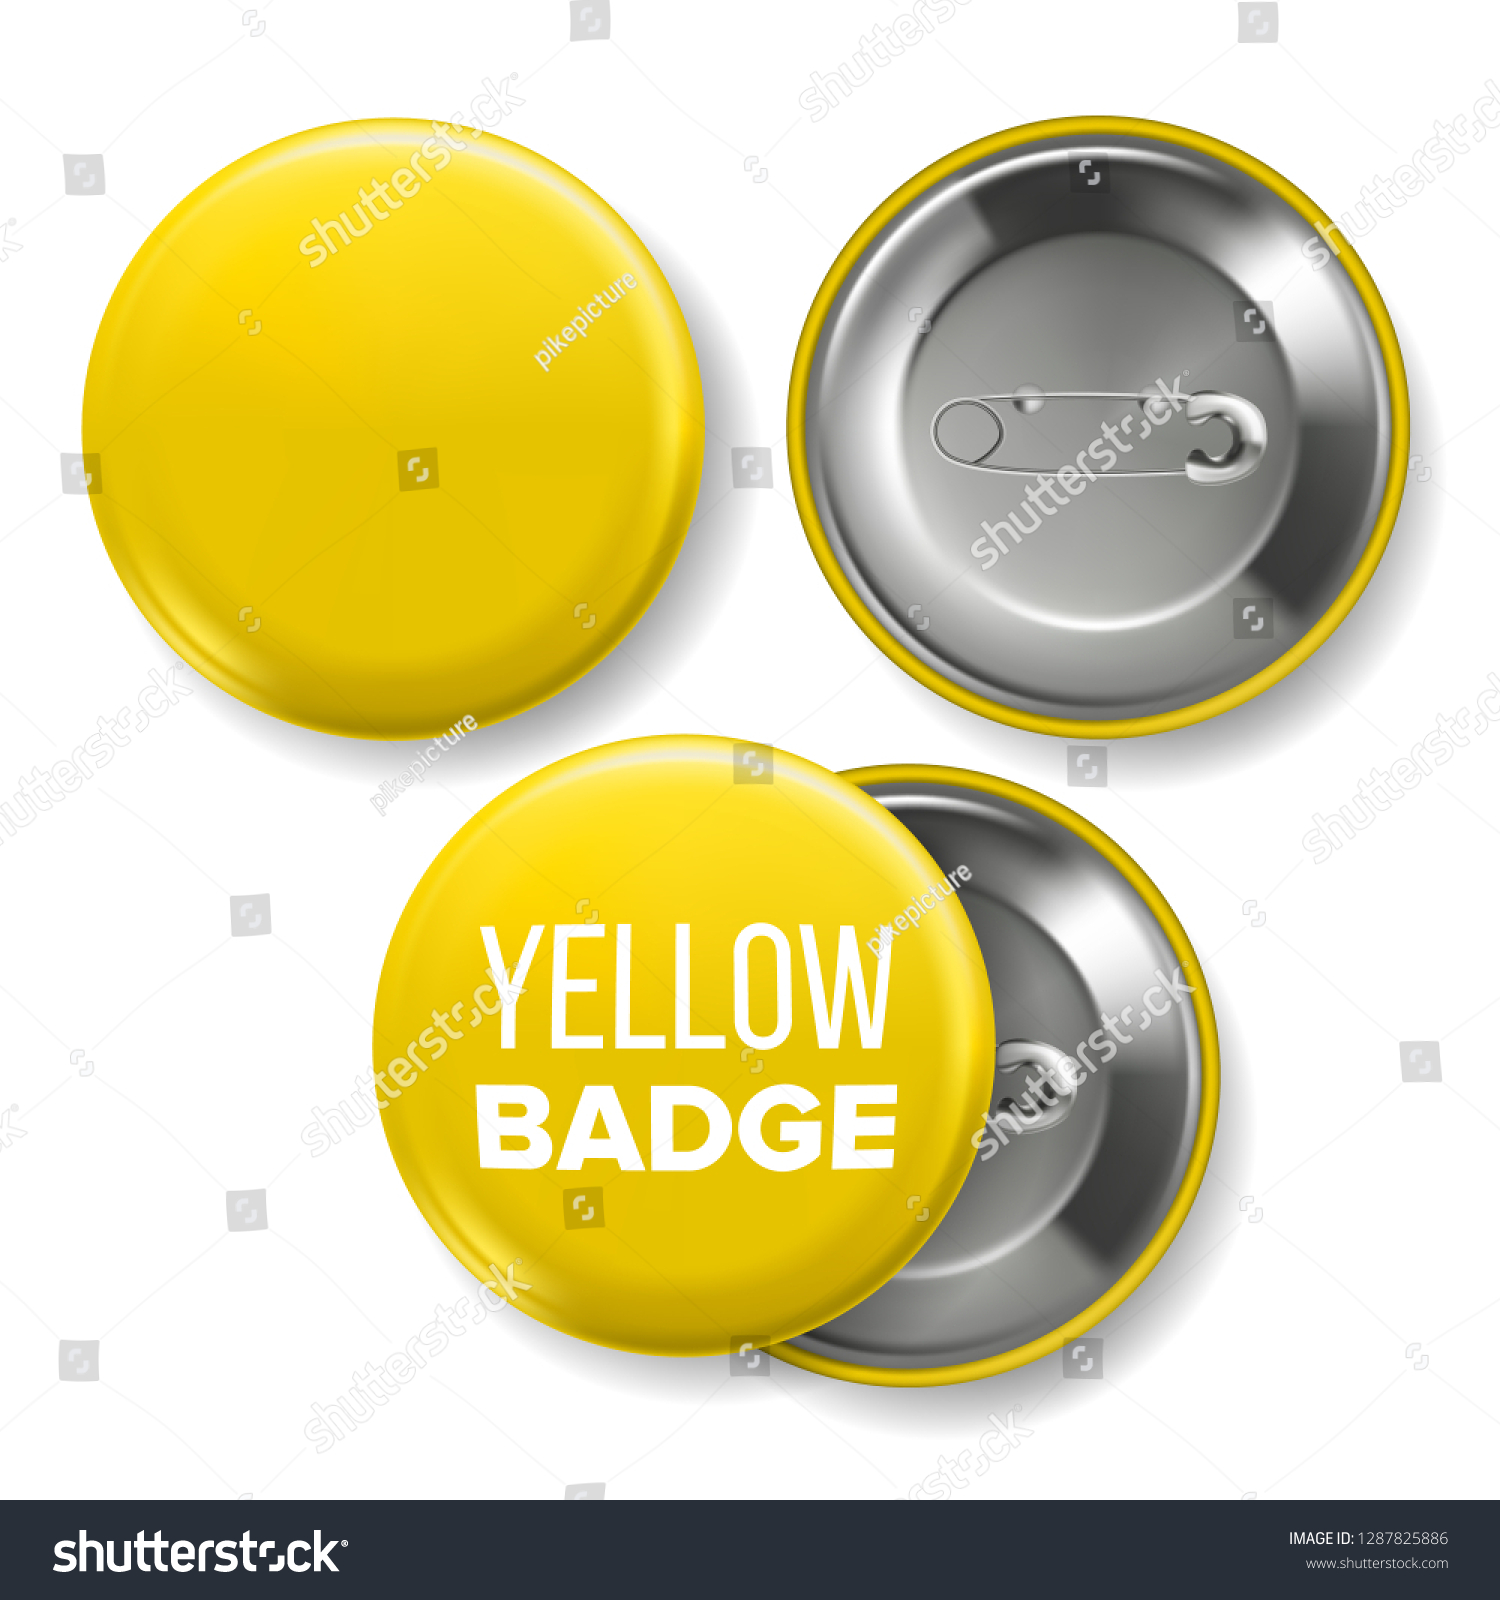 Download Yellow Badge Mockup Vector Pin Brooch Stock Vector Royalty Free 1287825886 PSD Mockup Templates